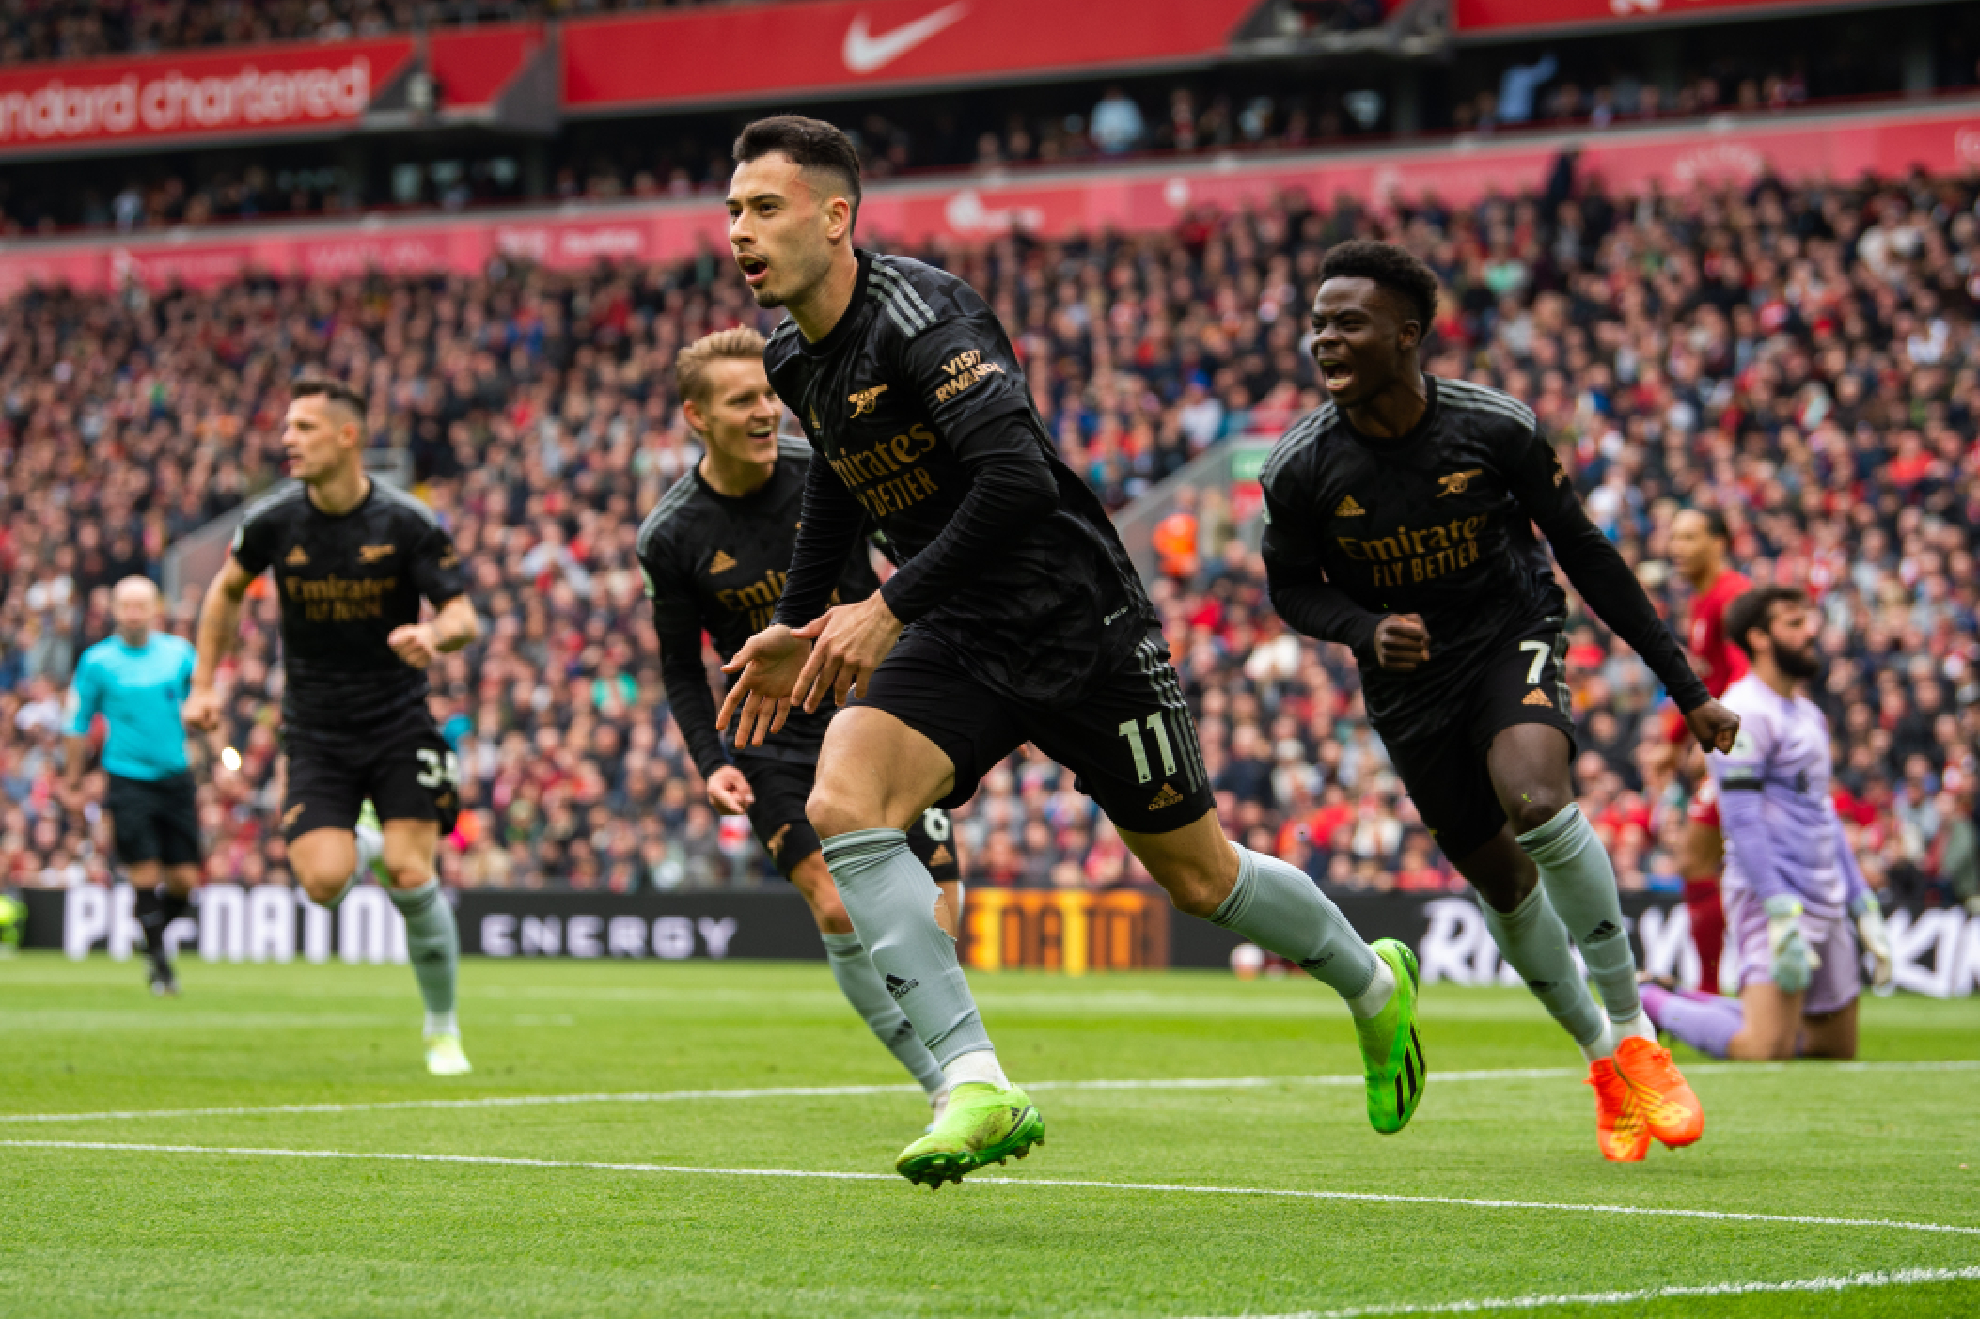 Liverpool empata al Arsenal en un cierre de locura en Anfield y el City acecha en la Premier